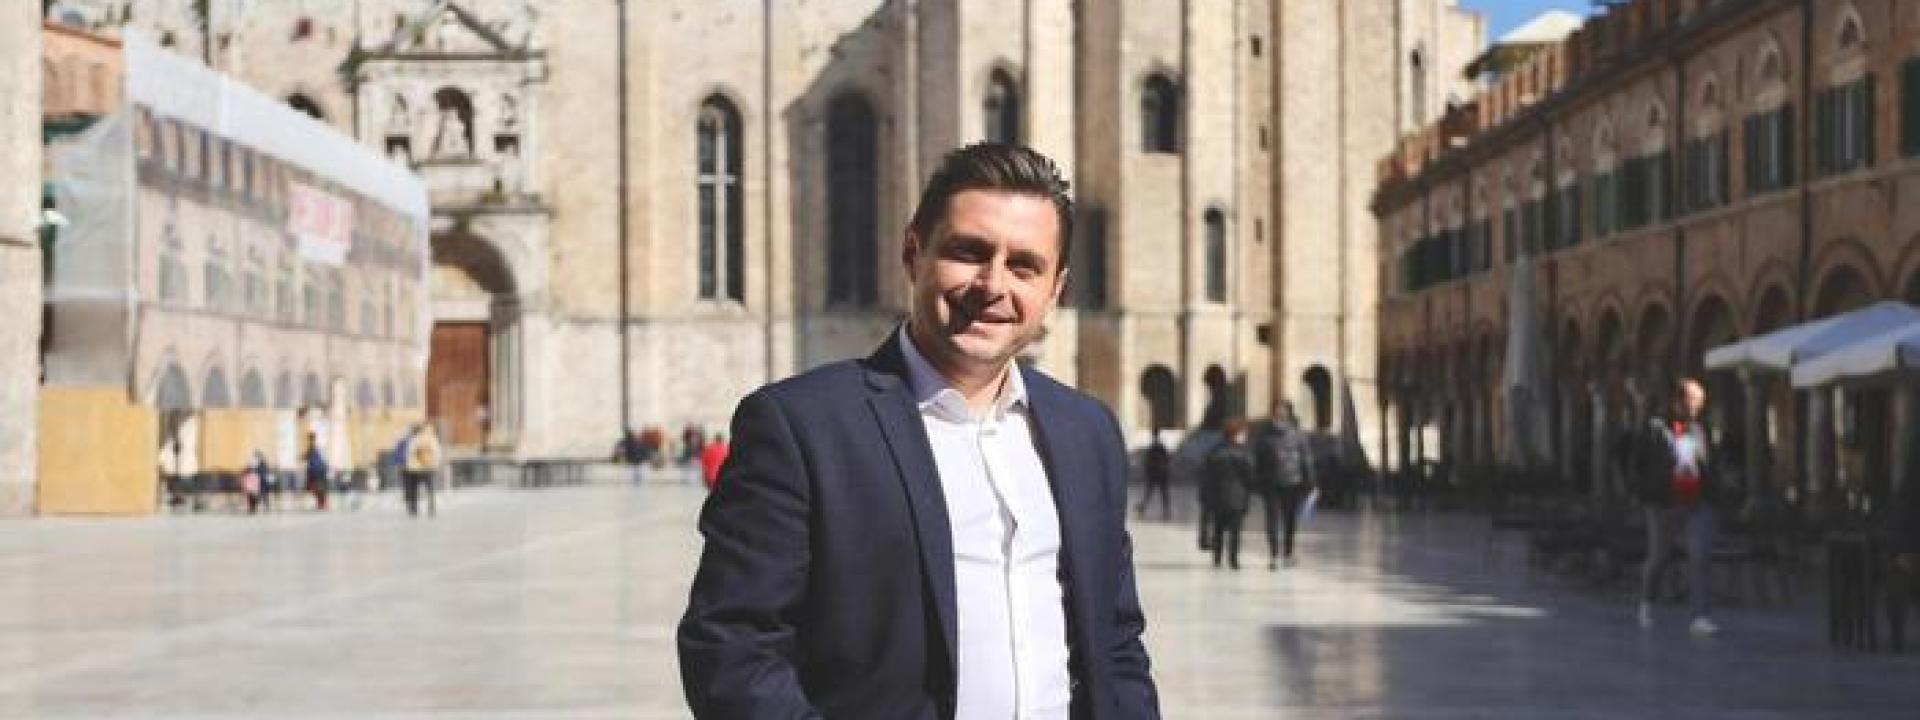 Marche - Rilevazione Noto Sondaggi: il sindaco di Ascoli secondo in Italia per gradimento